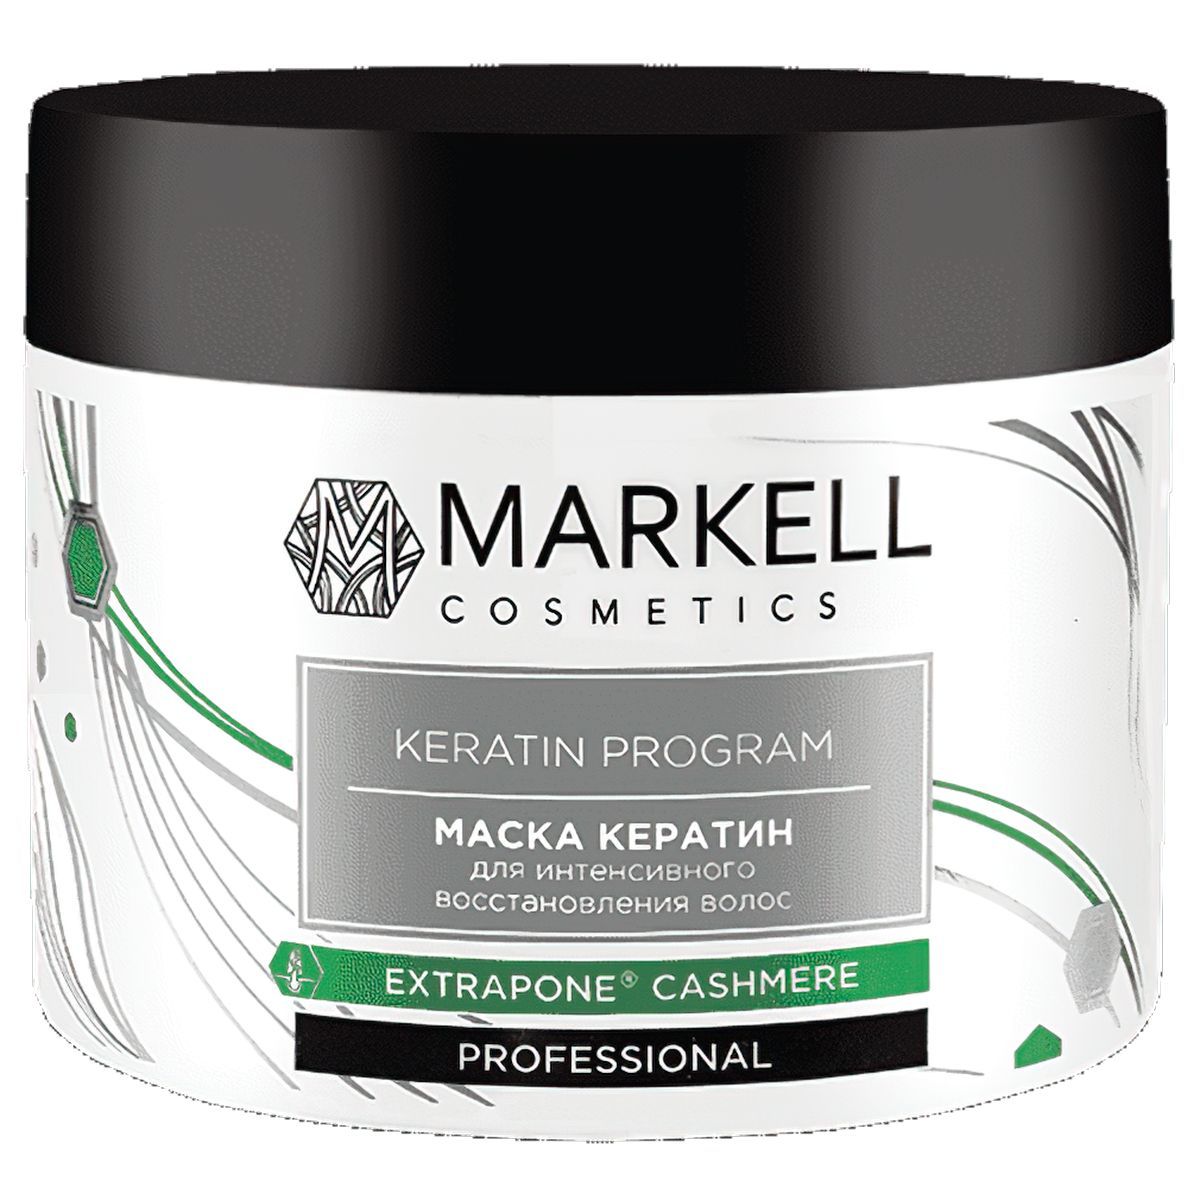 Косметика маски для волос отзывы. (Professional) маска для волос термозащита, 290г. Markell Anti hair loss Programm маска для волос. Markell Keratin. (Markell professional) маска для волос термозащита, 290г.